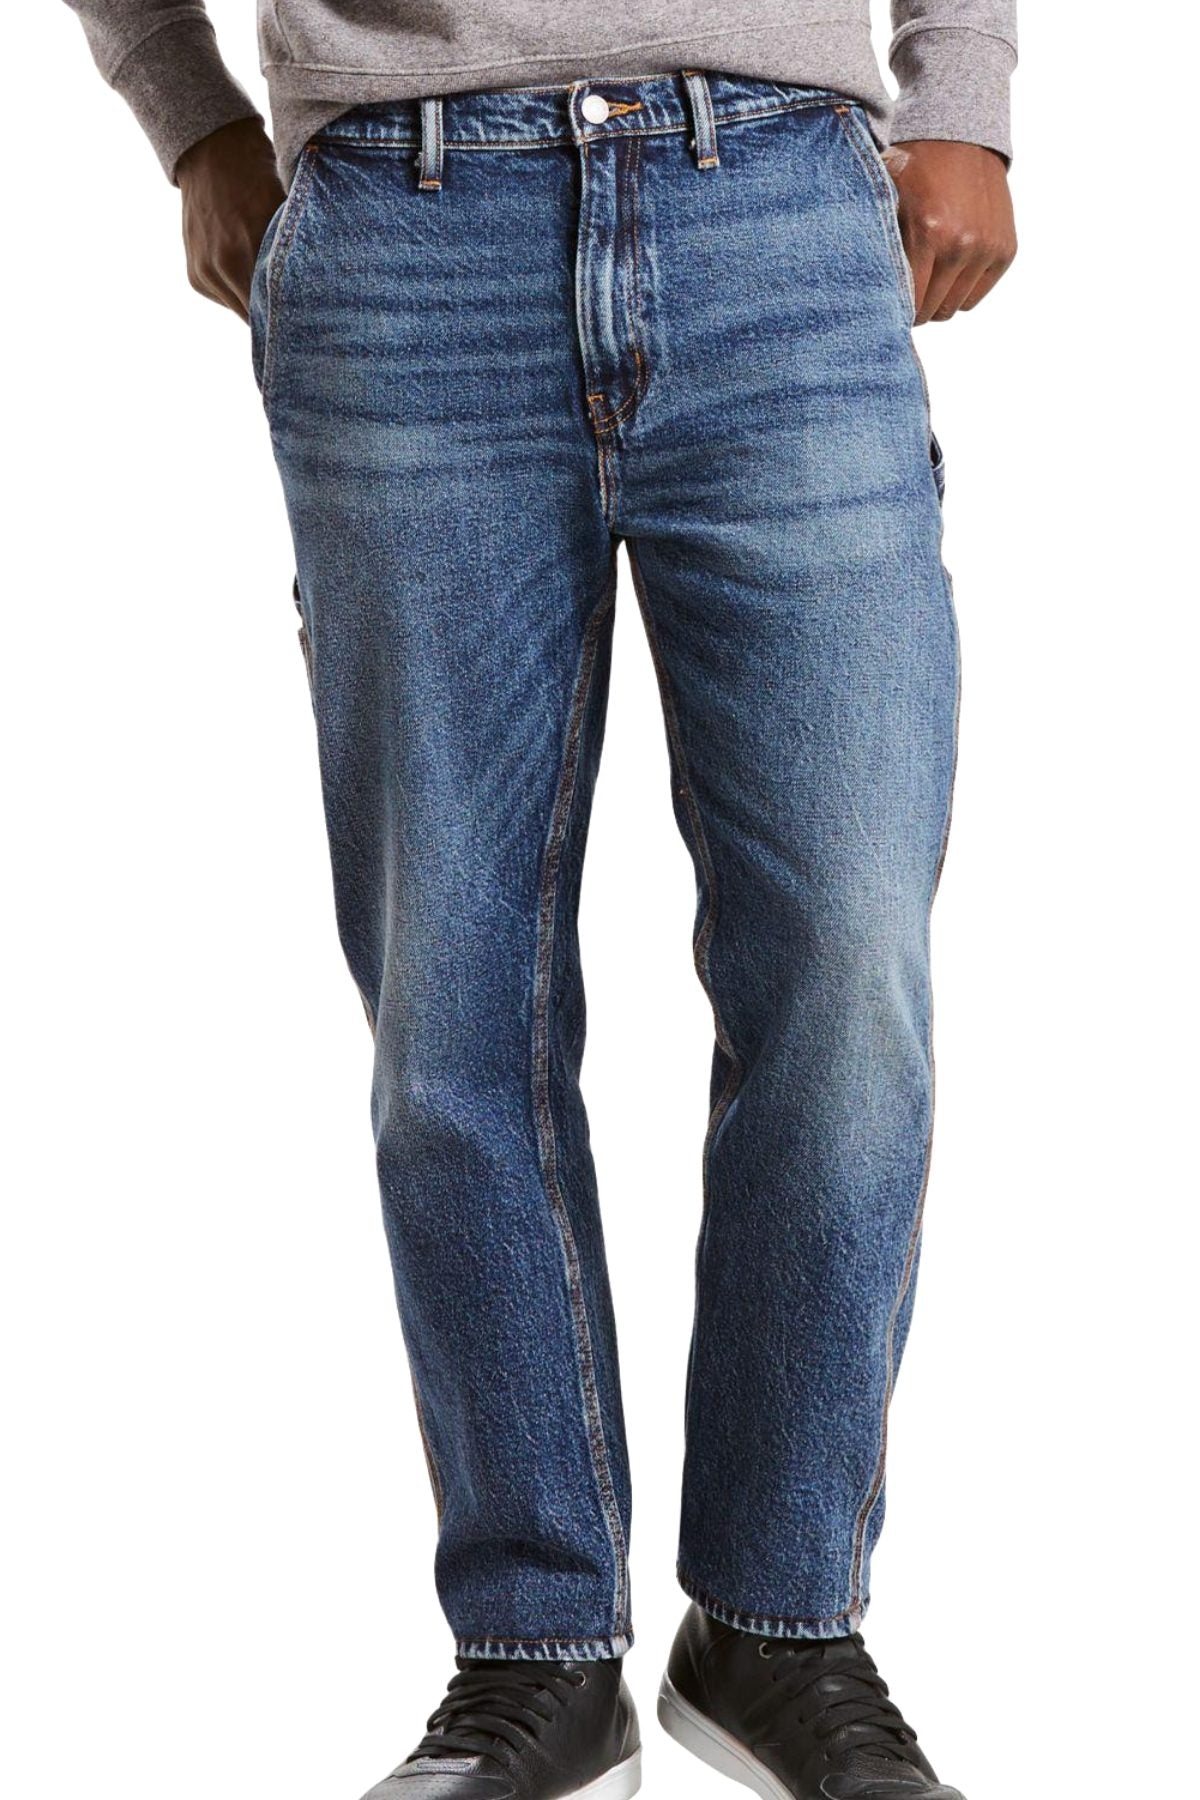 levi's slim carpenter jeans